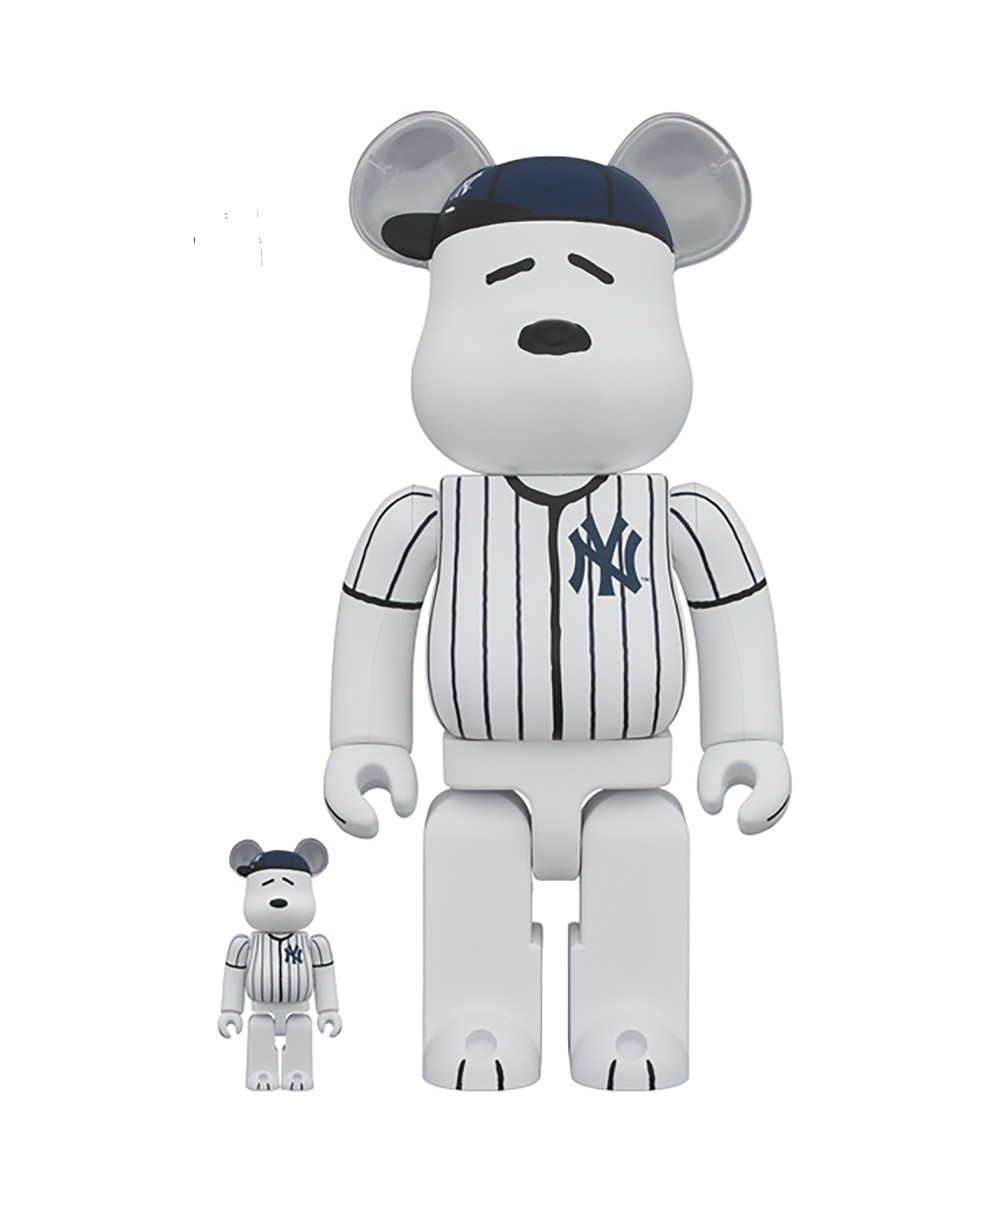  Bearbrick Snoopy 2er Set mit New York Yankees Jacke in 100% und 400% Größe